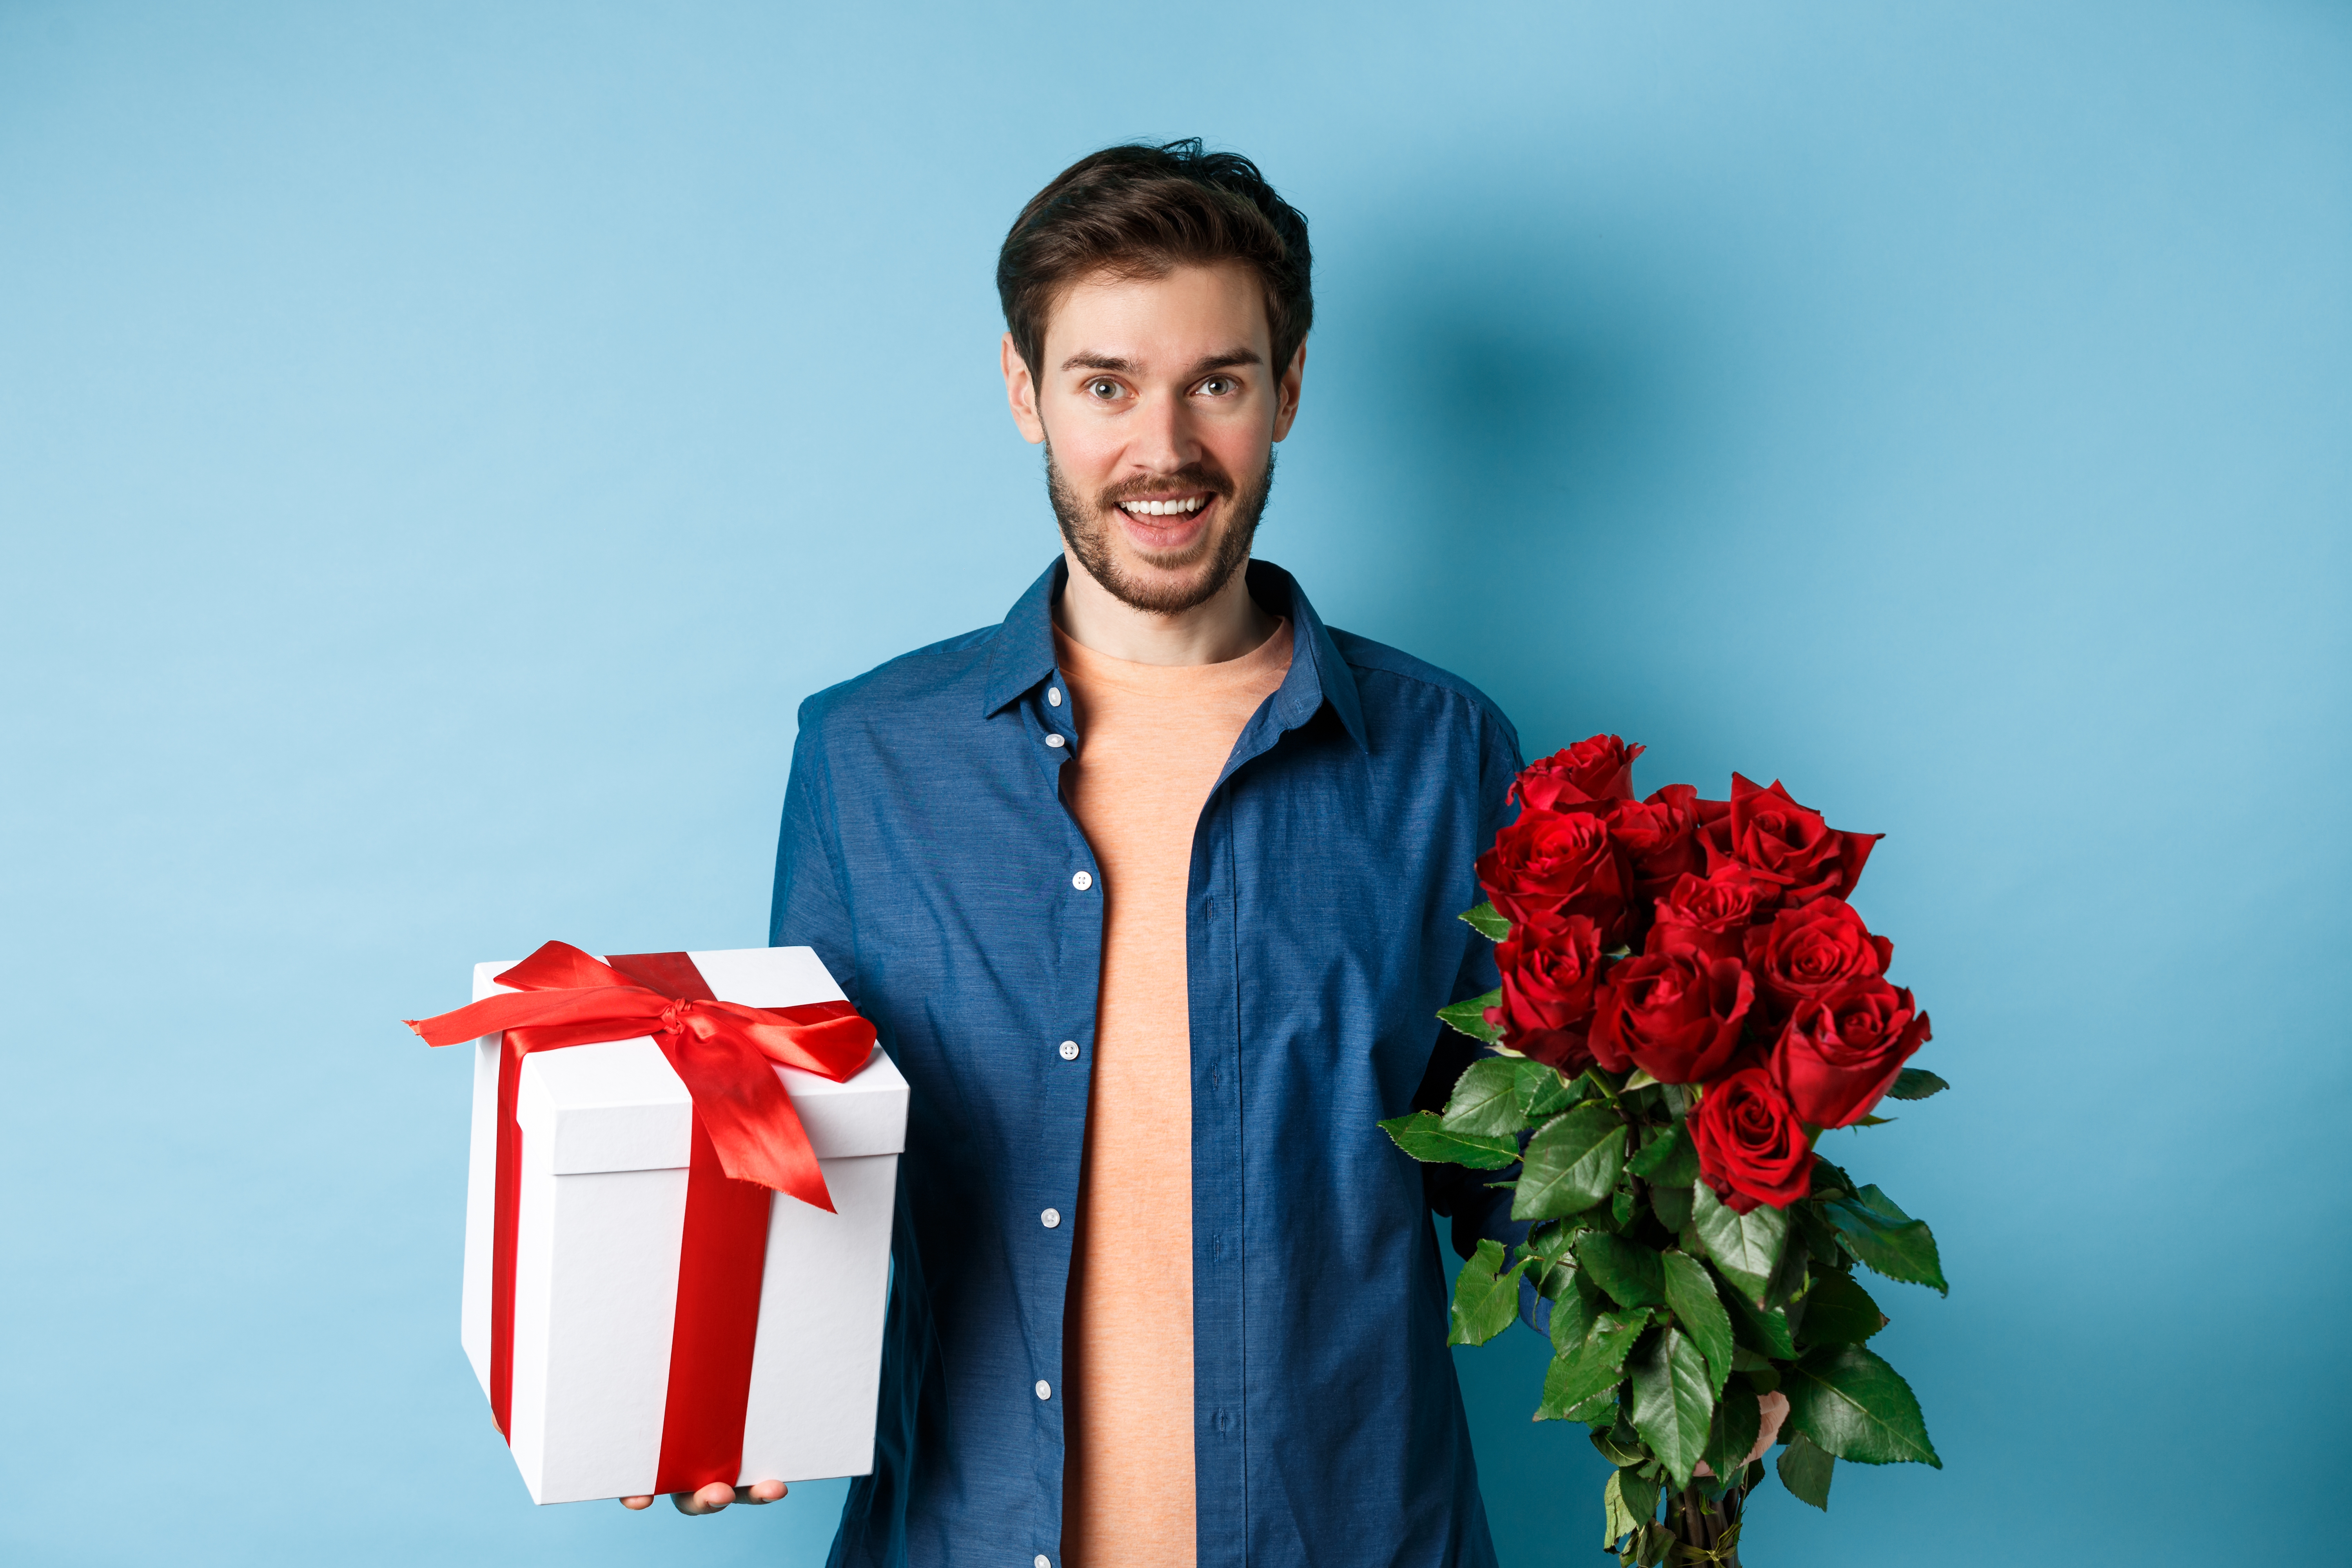 Joven feliz llevando flores y regalo en cita romántica. | Fuente: Shutterstock